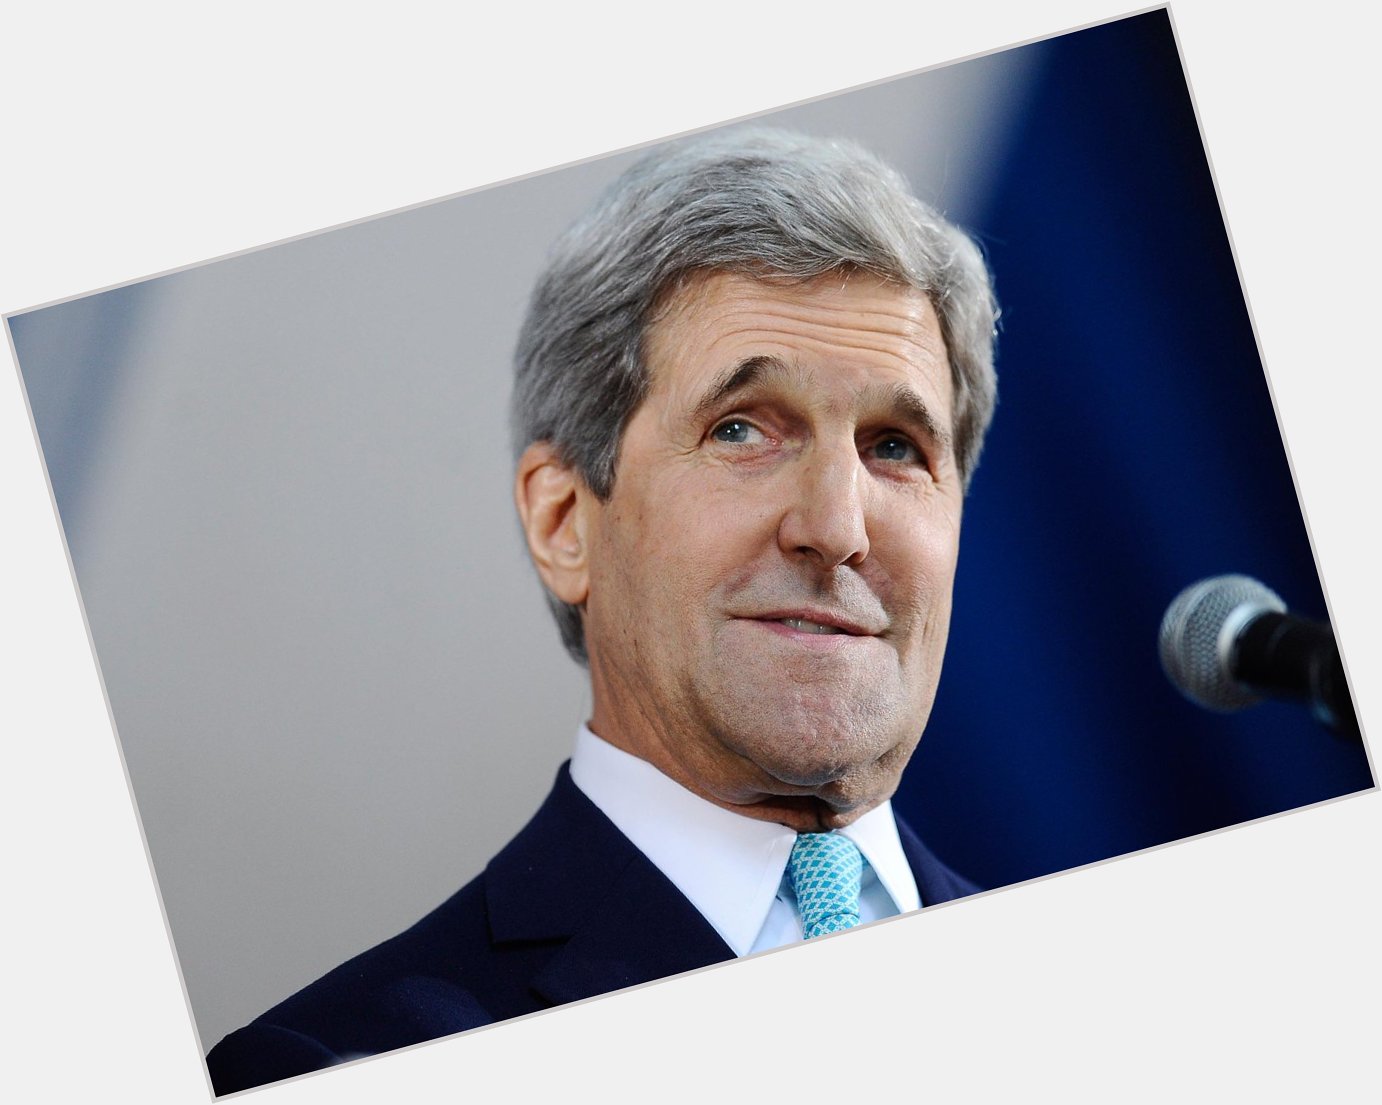 Wishing John Kerry a Happy Birthday.   